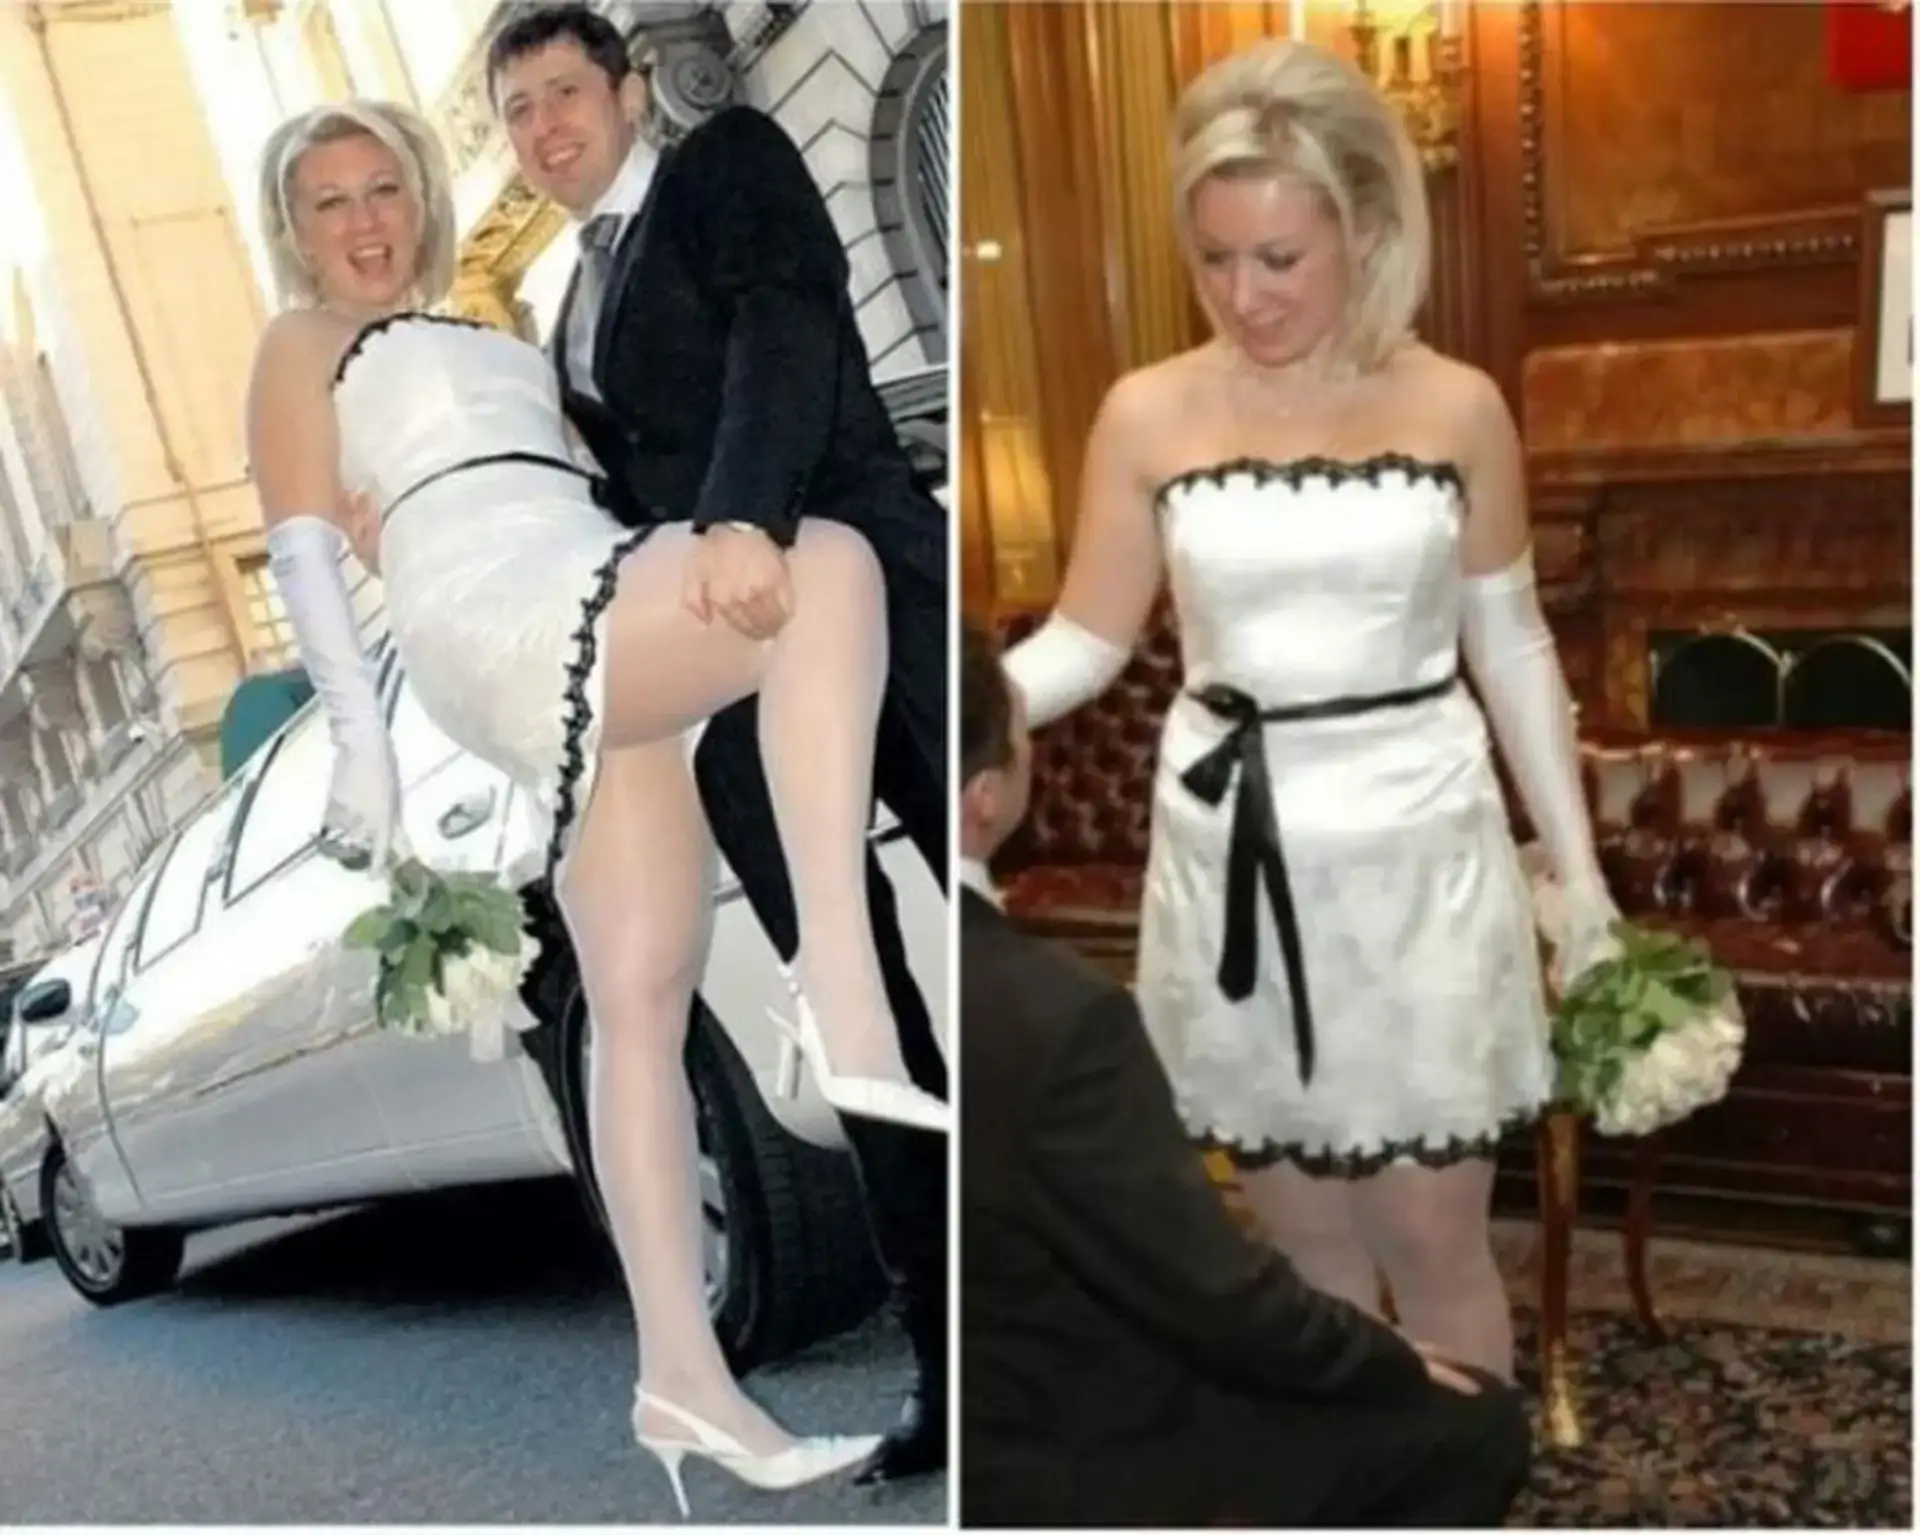 Putinova miljenica proslavila je 47. rođendan. A ovo su joj fotke s vjenčanja. Malčice su - divlje...